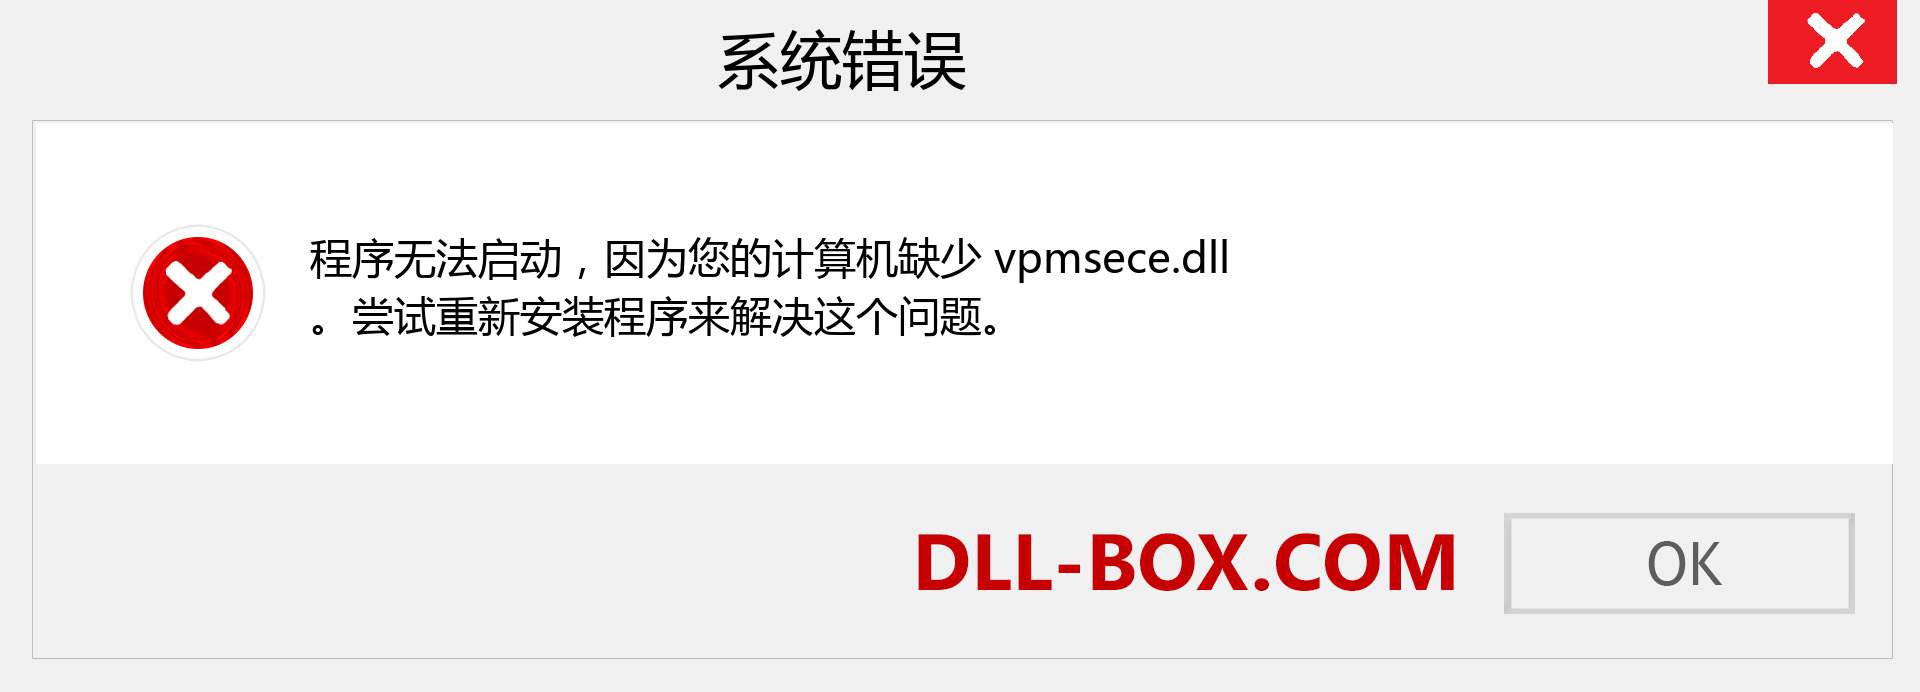 vpmsece.dll 文件丢失？。 适用于 Windows 7、8、10 的下载 - 修复 Windows、照片、图像上的 vpmsece dll 丢失错误